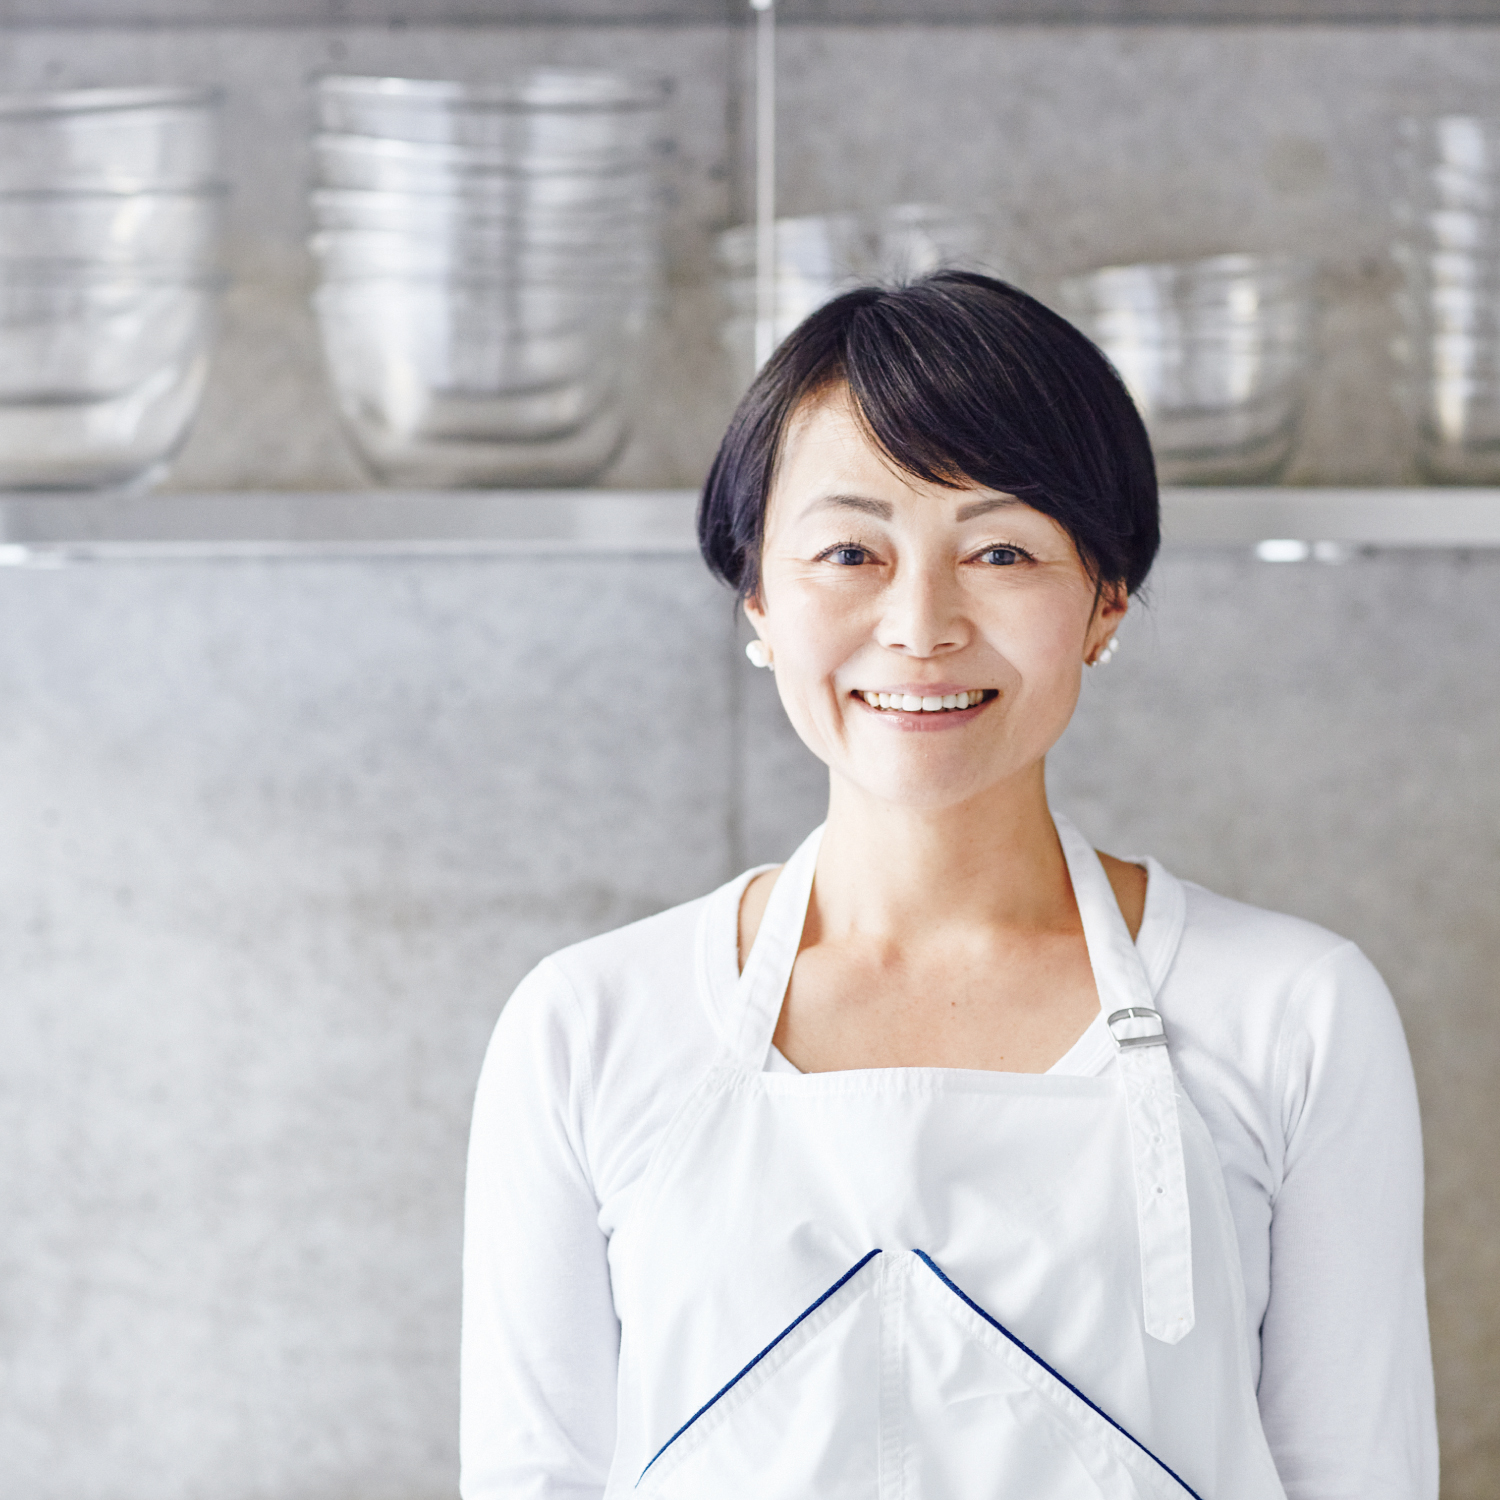 管理栄養士で料理研究家の藤井恵さん